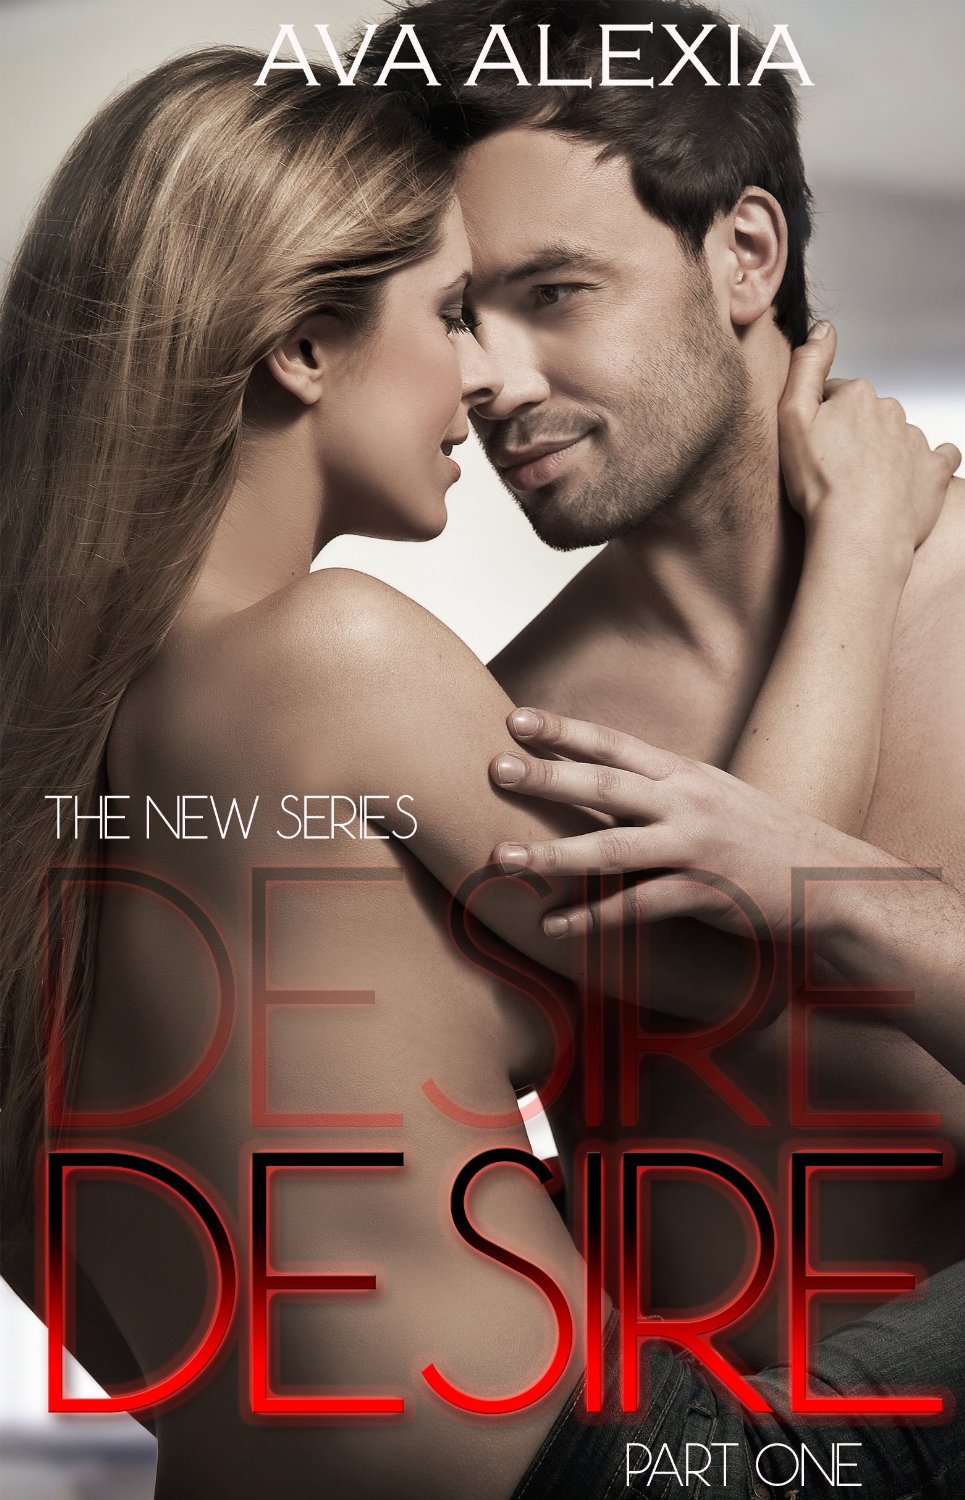 Desire by Beth Waller